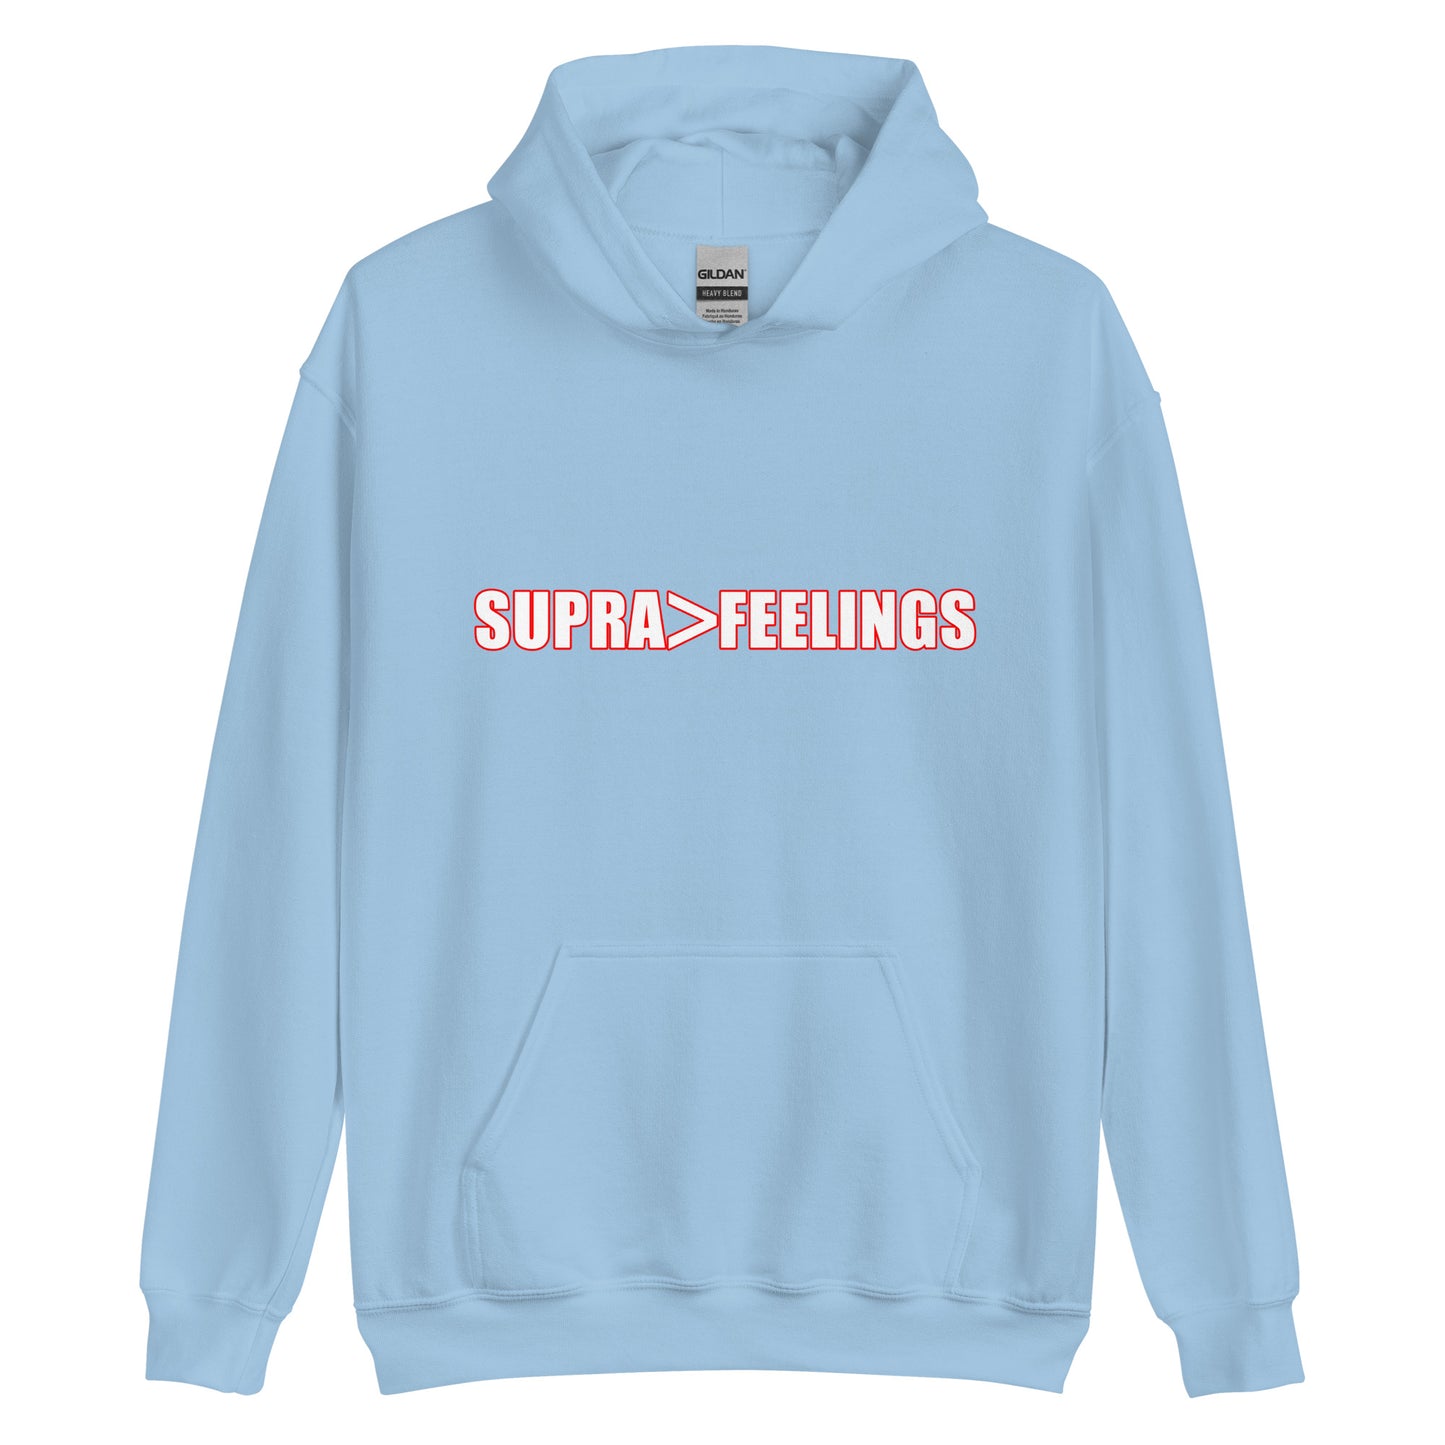 Supra>Feelings Hoodie